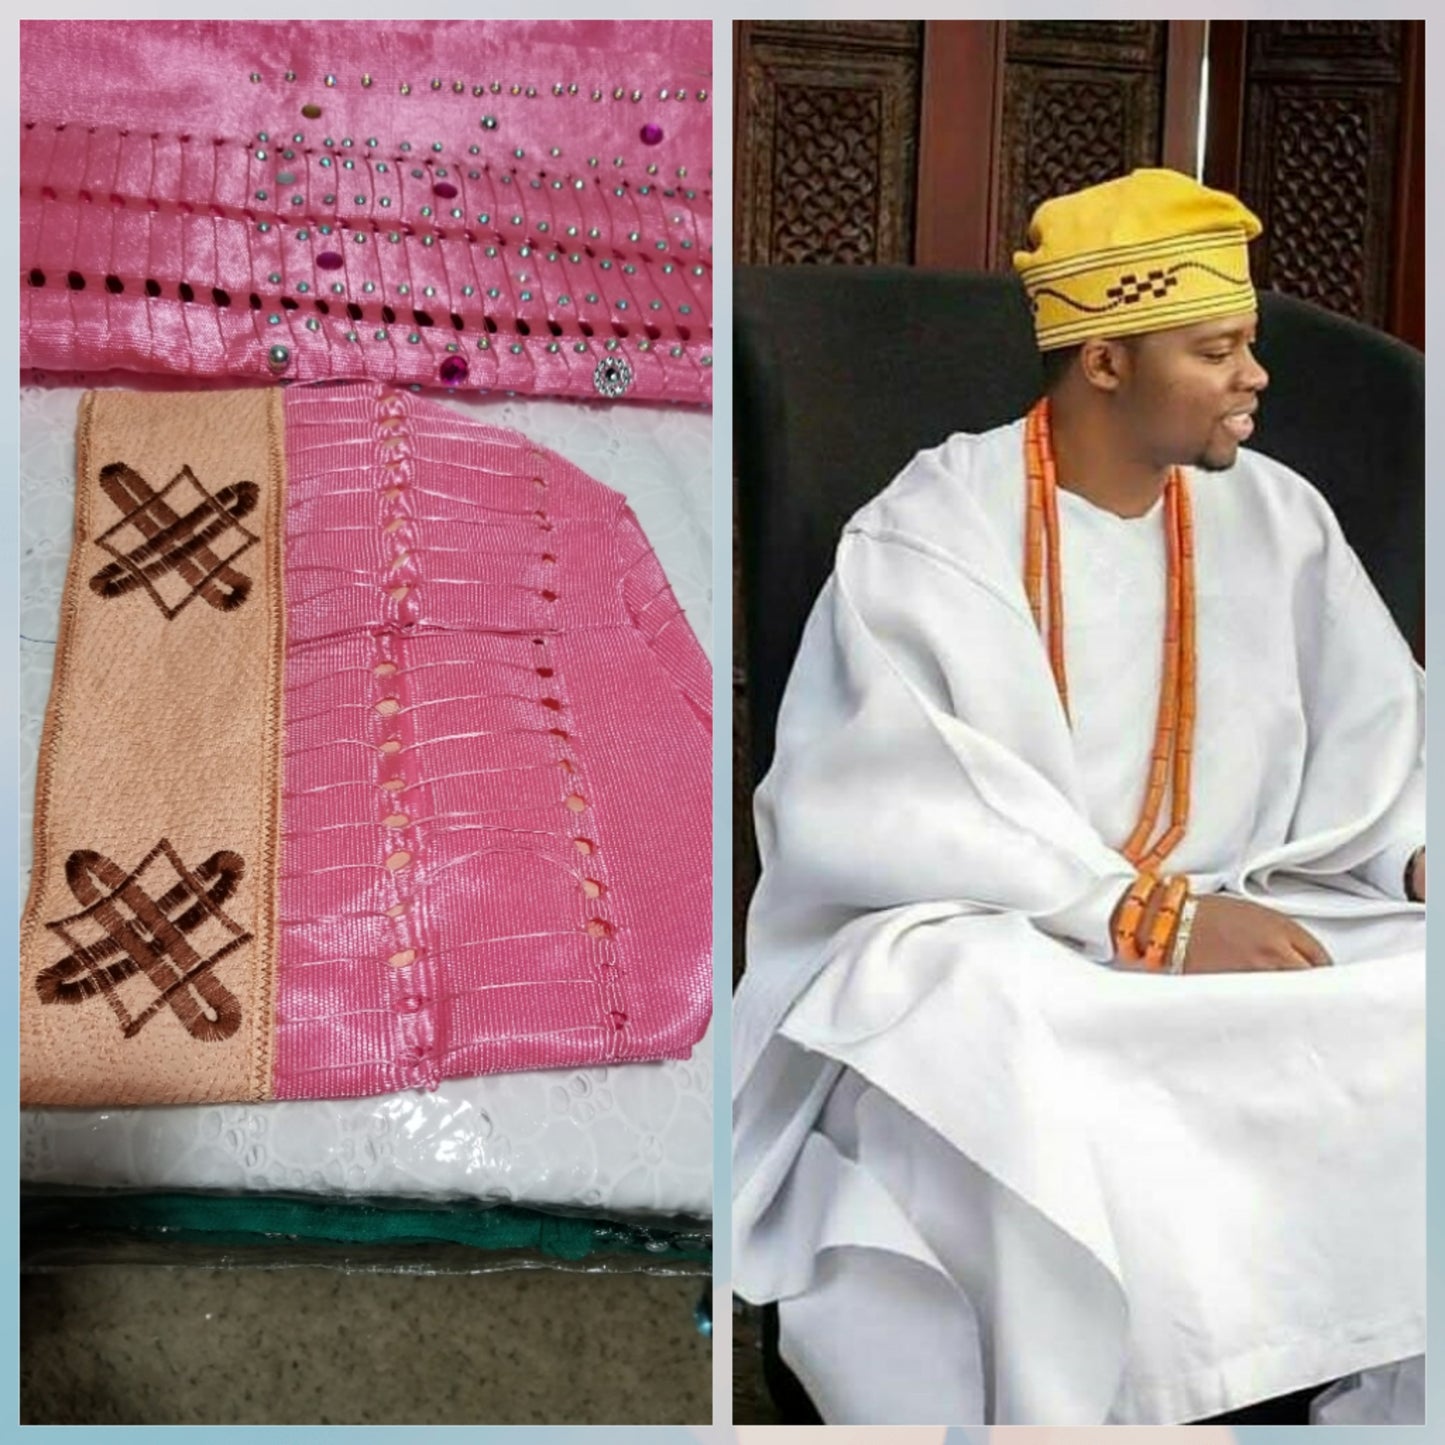 Neu eingetroffene nigerianische Herrenmütze für Agbada-Eingeborenenkleidung. Gestickte Aso-oke-Mütze in rosa Farbe, Größe 22 Zoll